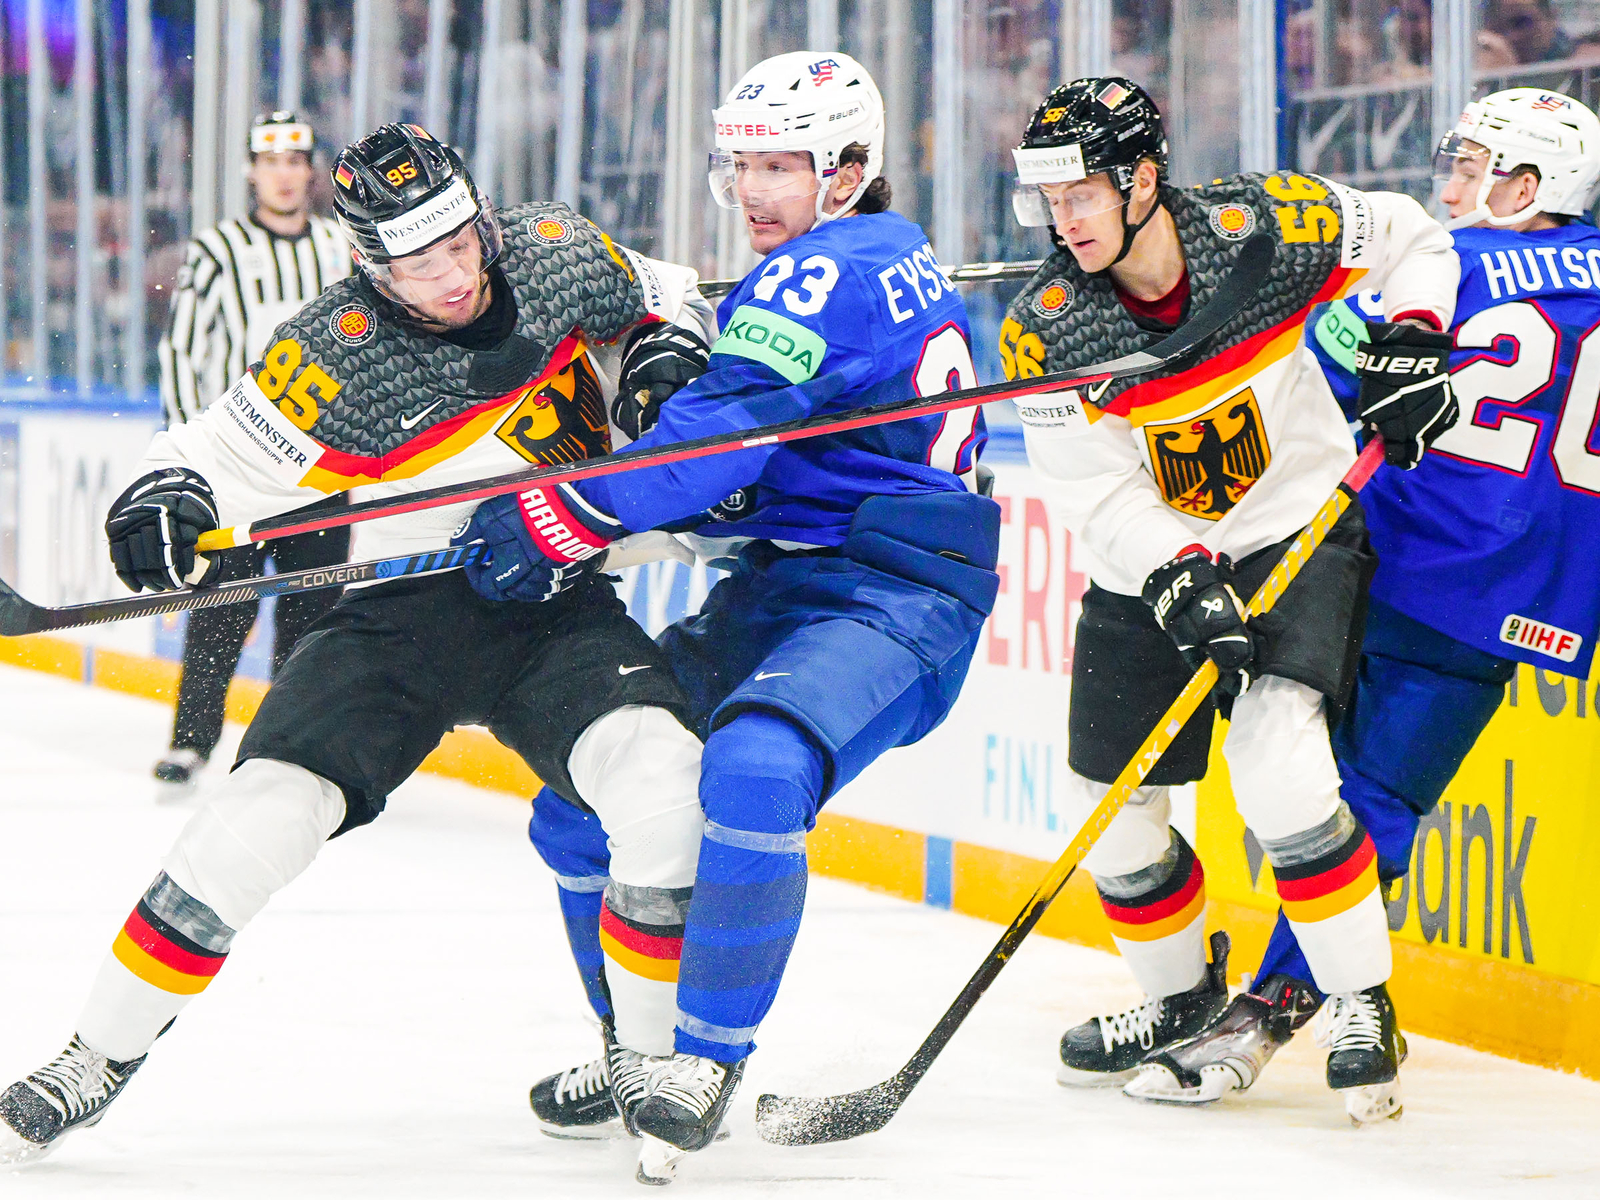 USA bezwingen Deutschland bei Eishockey-WM in Österreich-Gruppe knapp